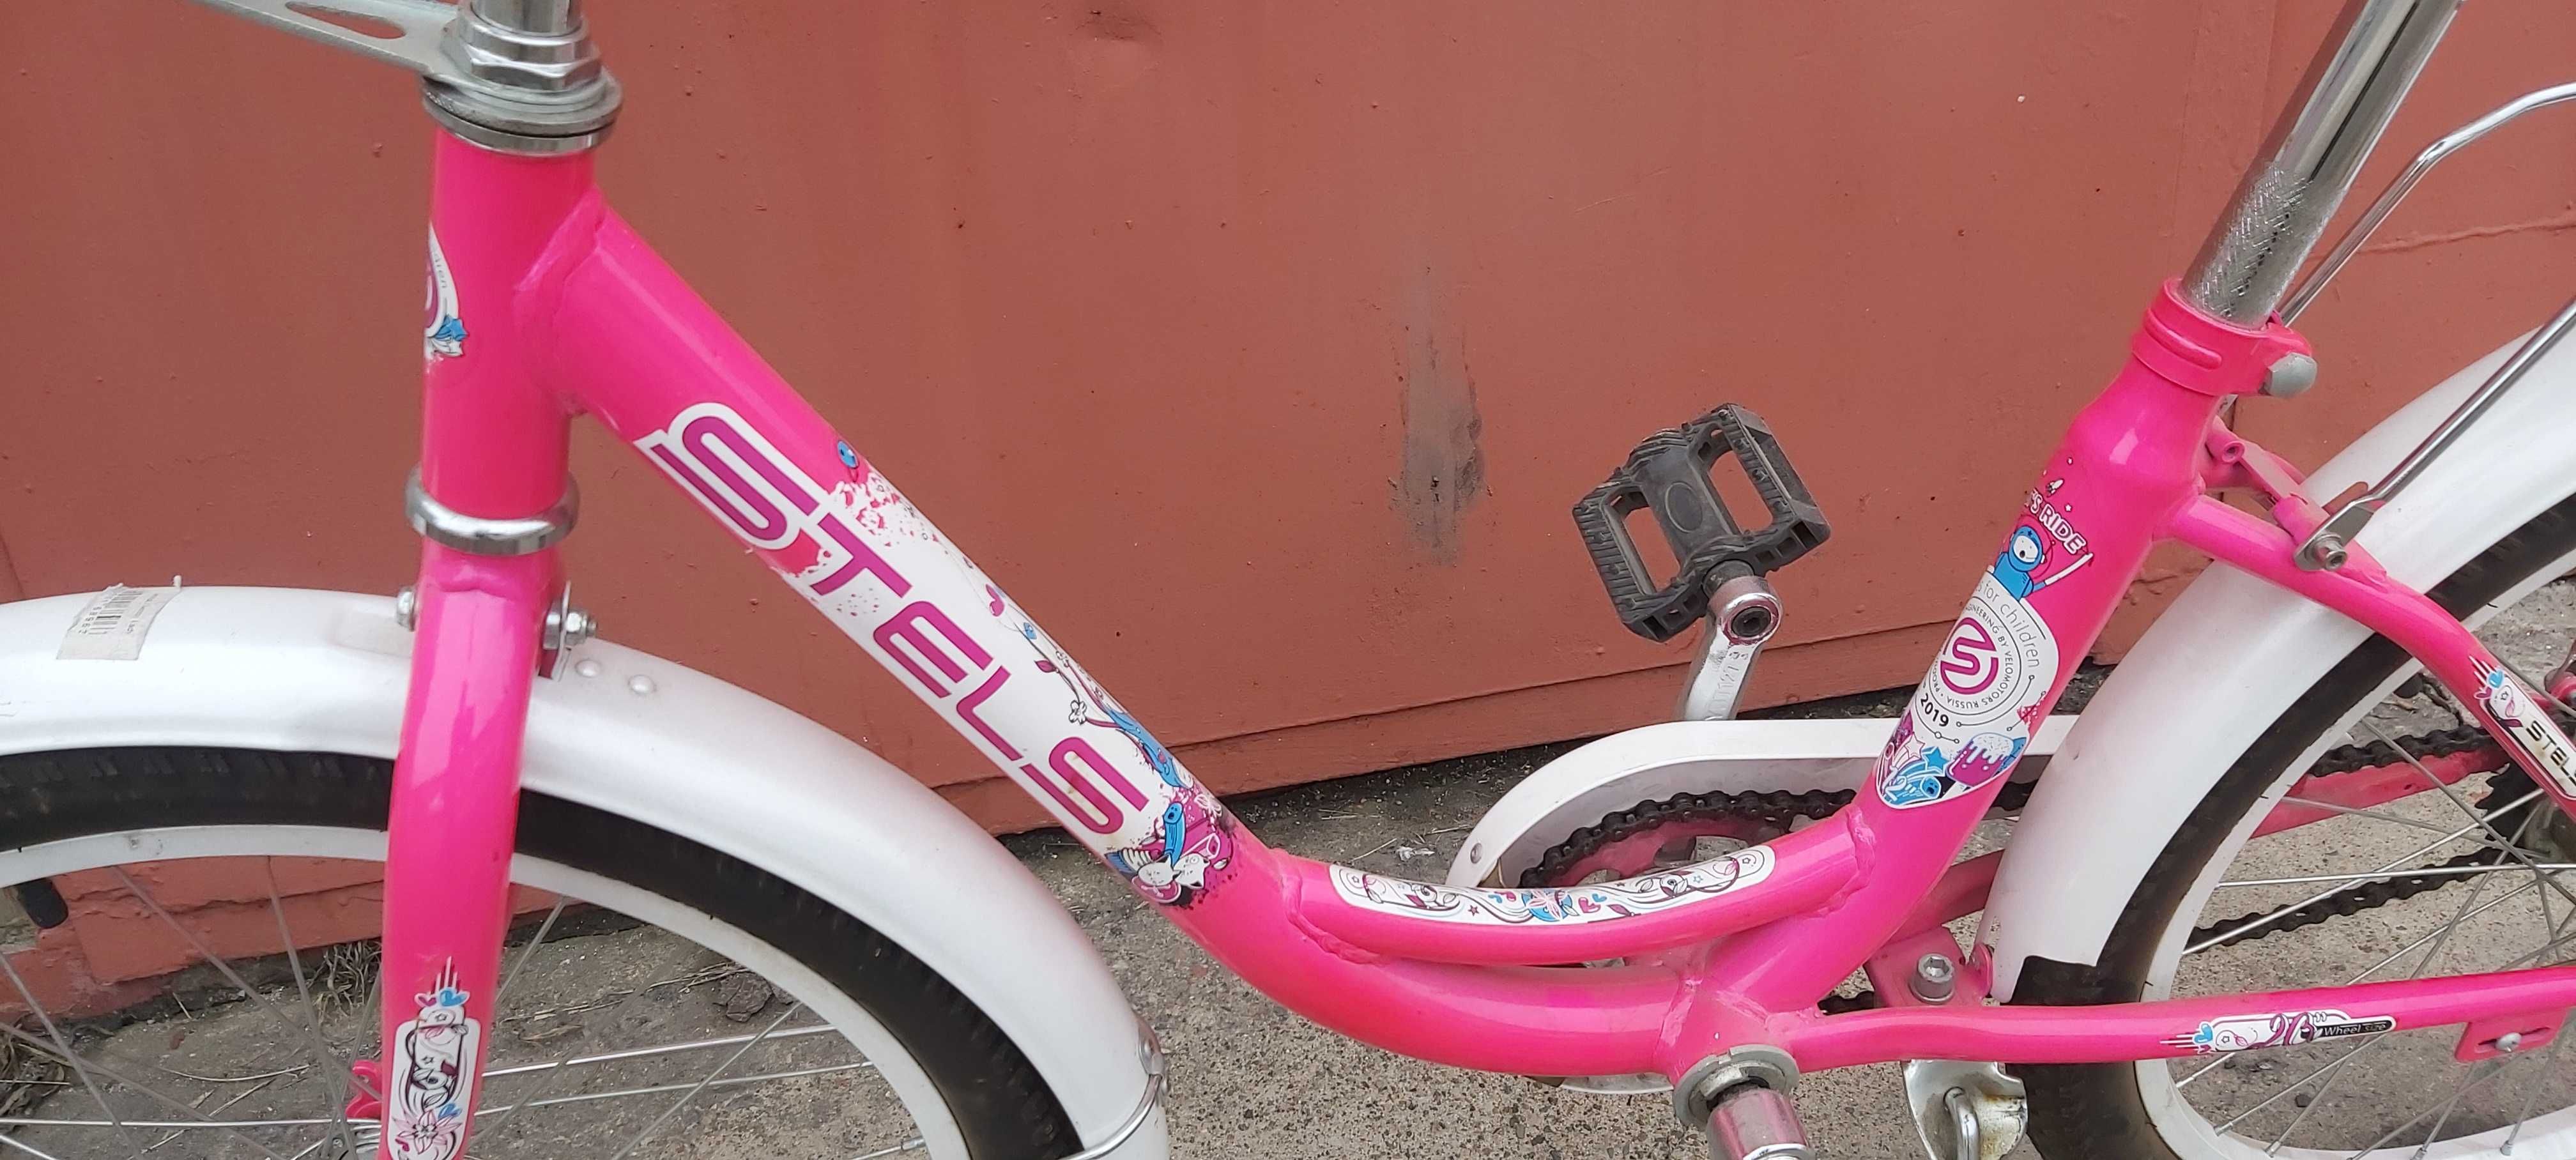 Продам велосипед подростковый для девочки